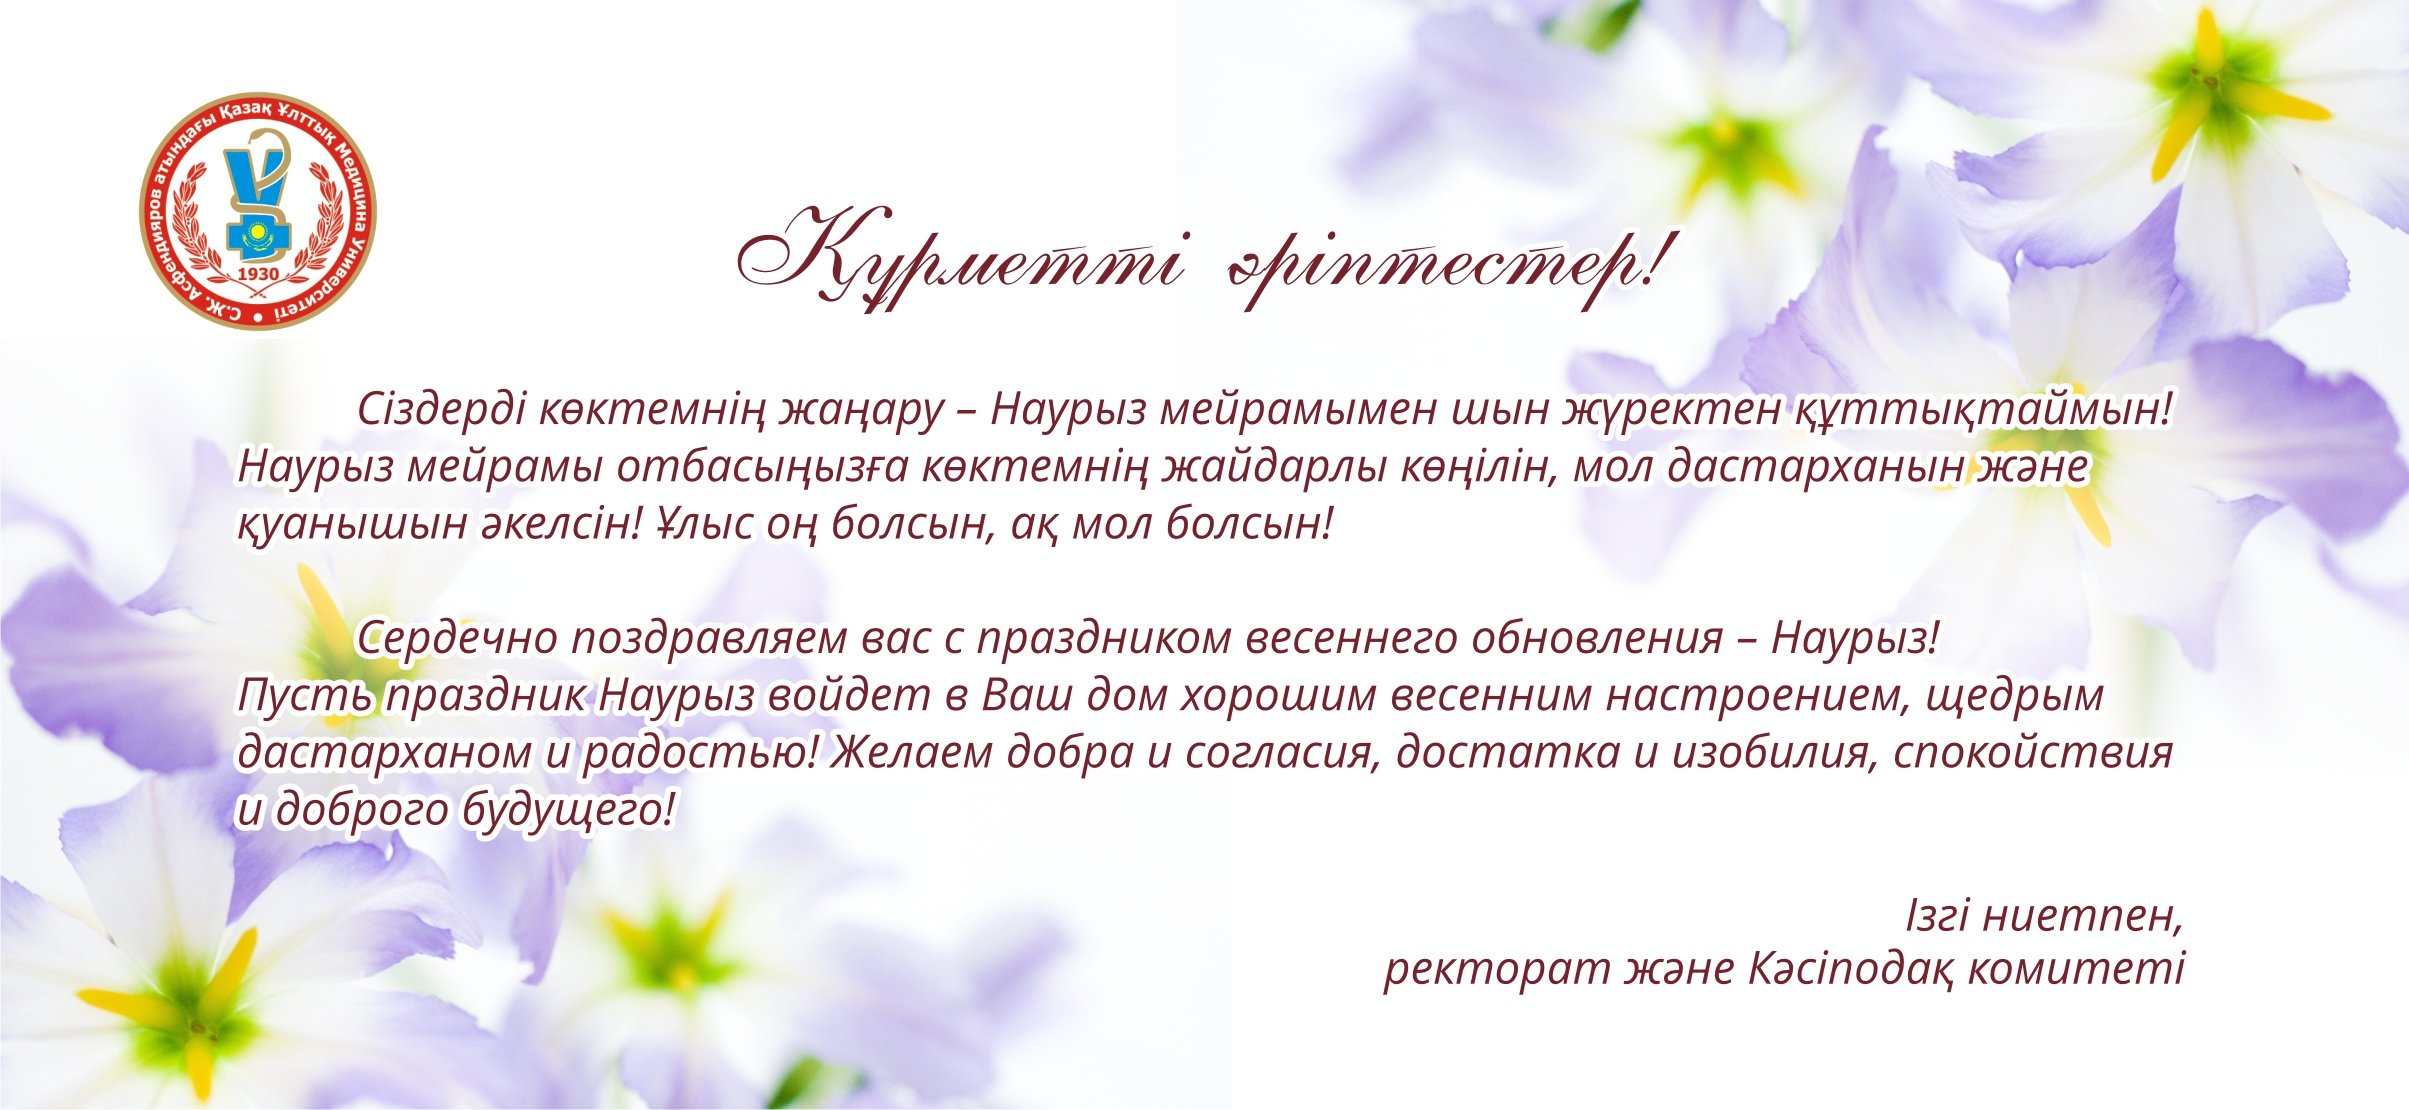 Наурыз всех приглашает текст. Пригласительные открытки на Наурыз. Приглашение на праздник Наурыз. Открытка с Наурызом на казахском языке. Поздравление с Наурызом на казахском.